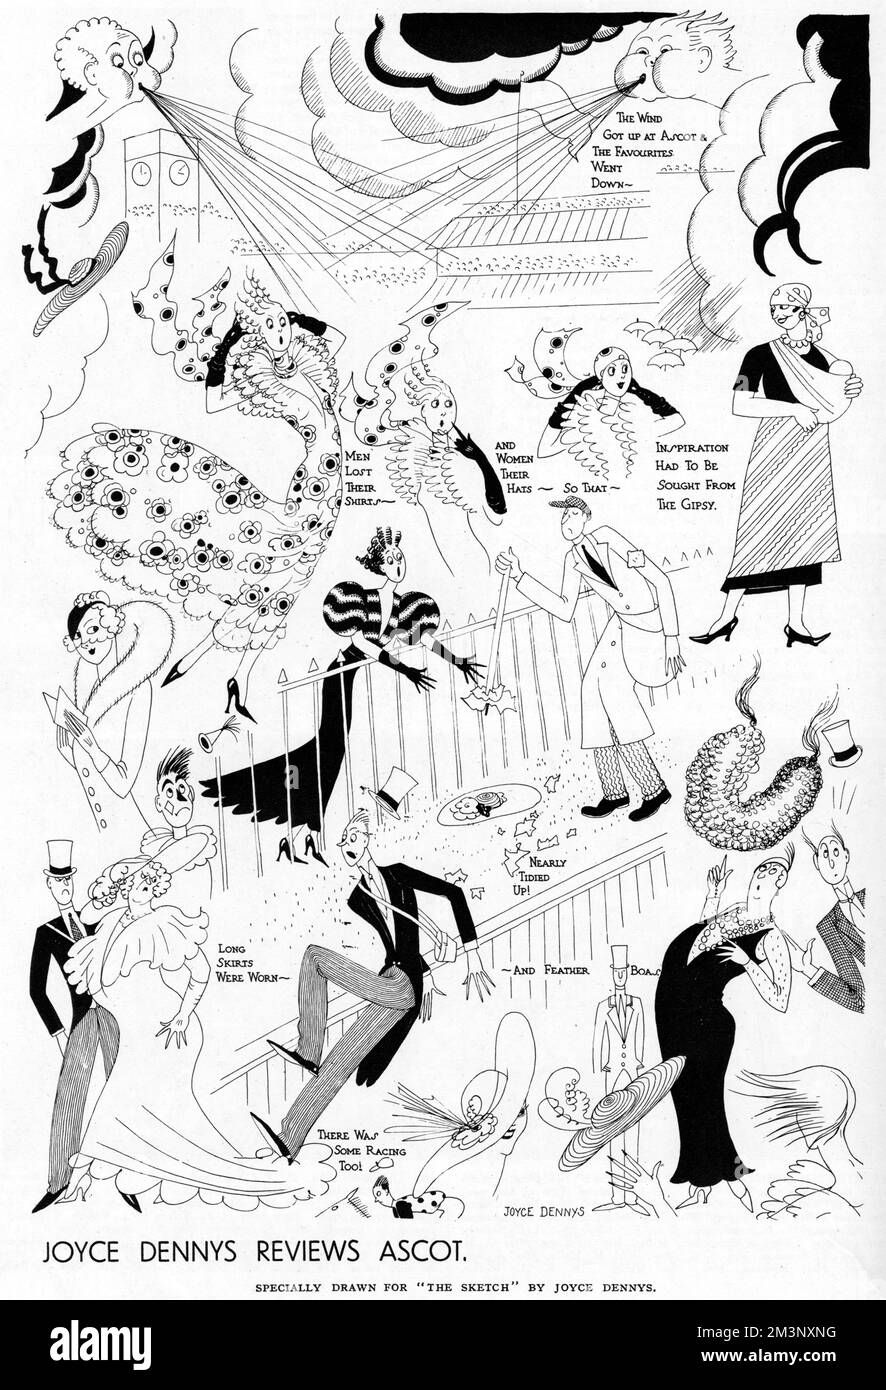 Eine Reihe humorvoller Skizzen von Joyce Dennys, die sich über die Smart Society im Royal Ascot lustig machen. Sie zeigt einer modischen Dame, wie sie ihren Hut verliert und ihn fast als Müll aufsammeln lässt, während lange Röcke unbeholfen aufgesetzt werden. Datum: 1934 Stockfoto